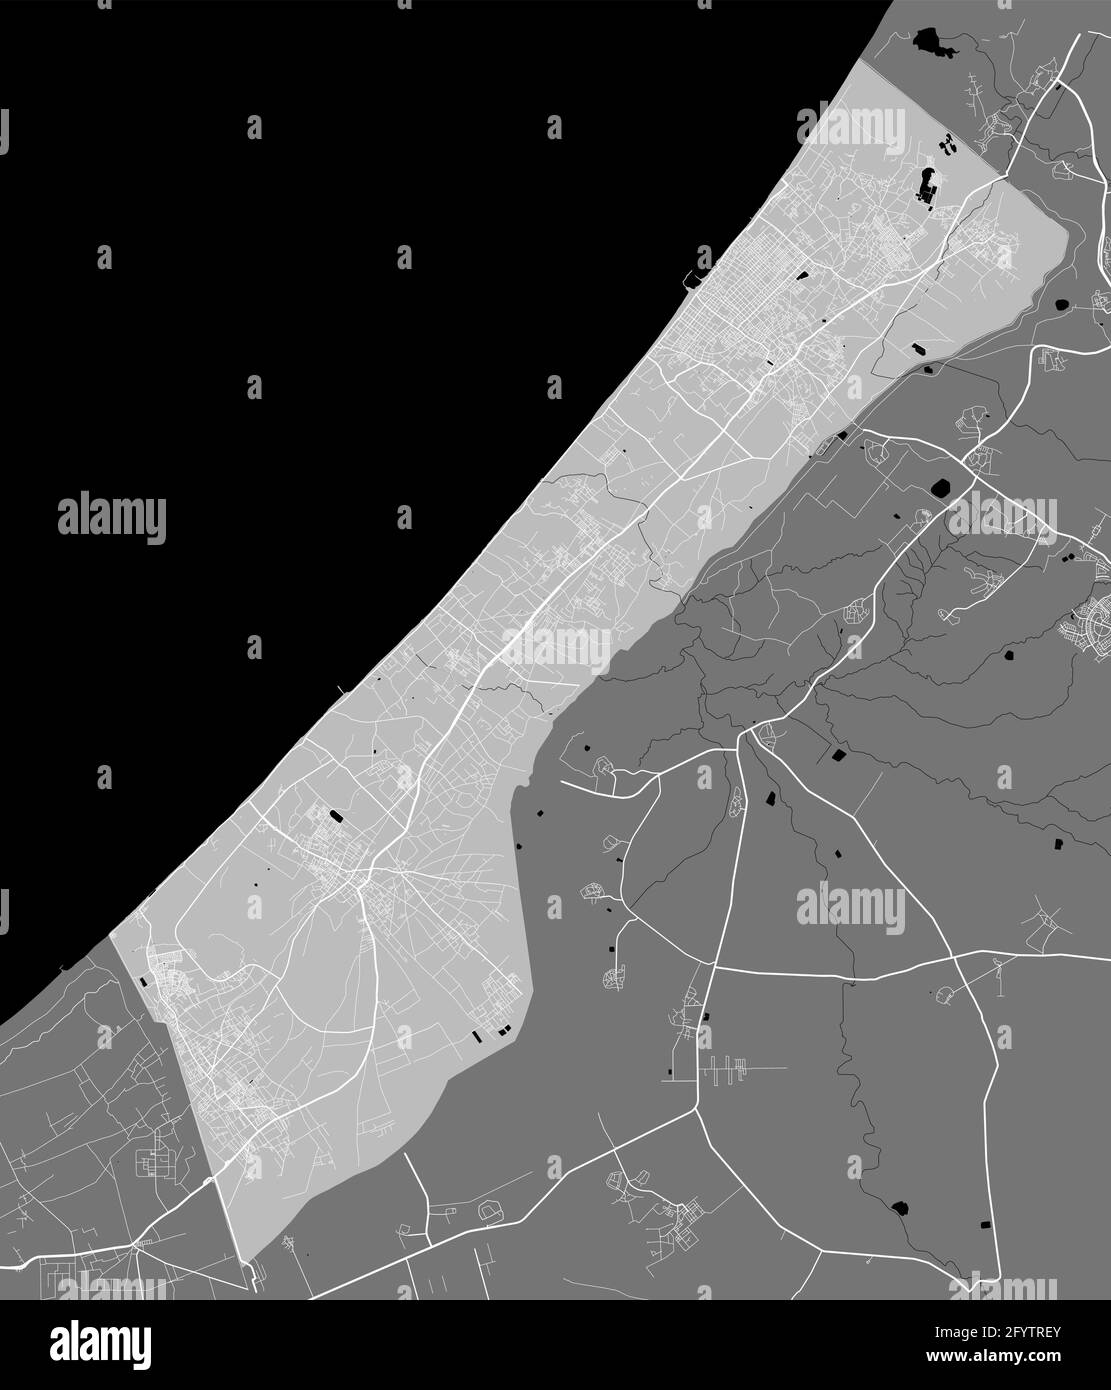 Mappa dettagliata dell'area amministrativa della striscia di Gaza. Illustrazione vettoriale priva di royalty, panorama terrestre. Mappa turistica grafica decorativa del territorio della striscia di Gaza Illustrazione Vettoriale